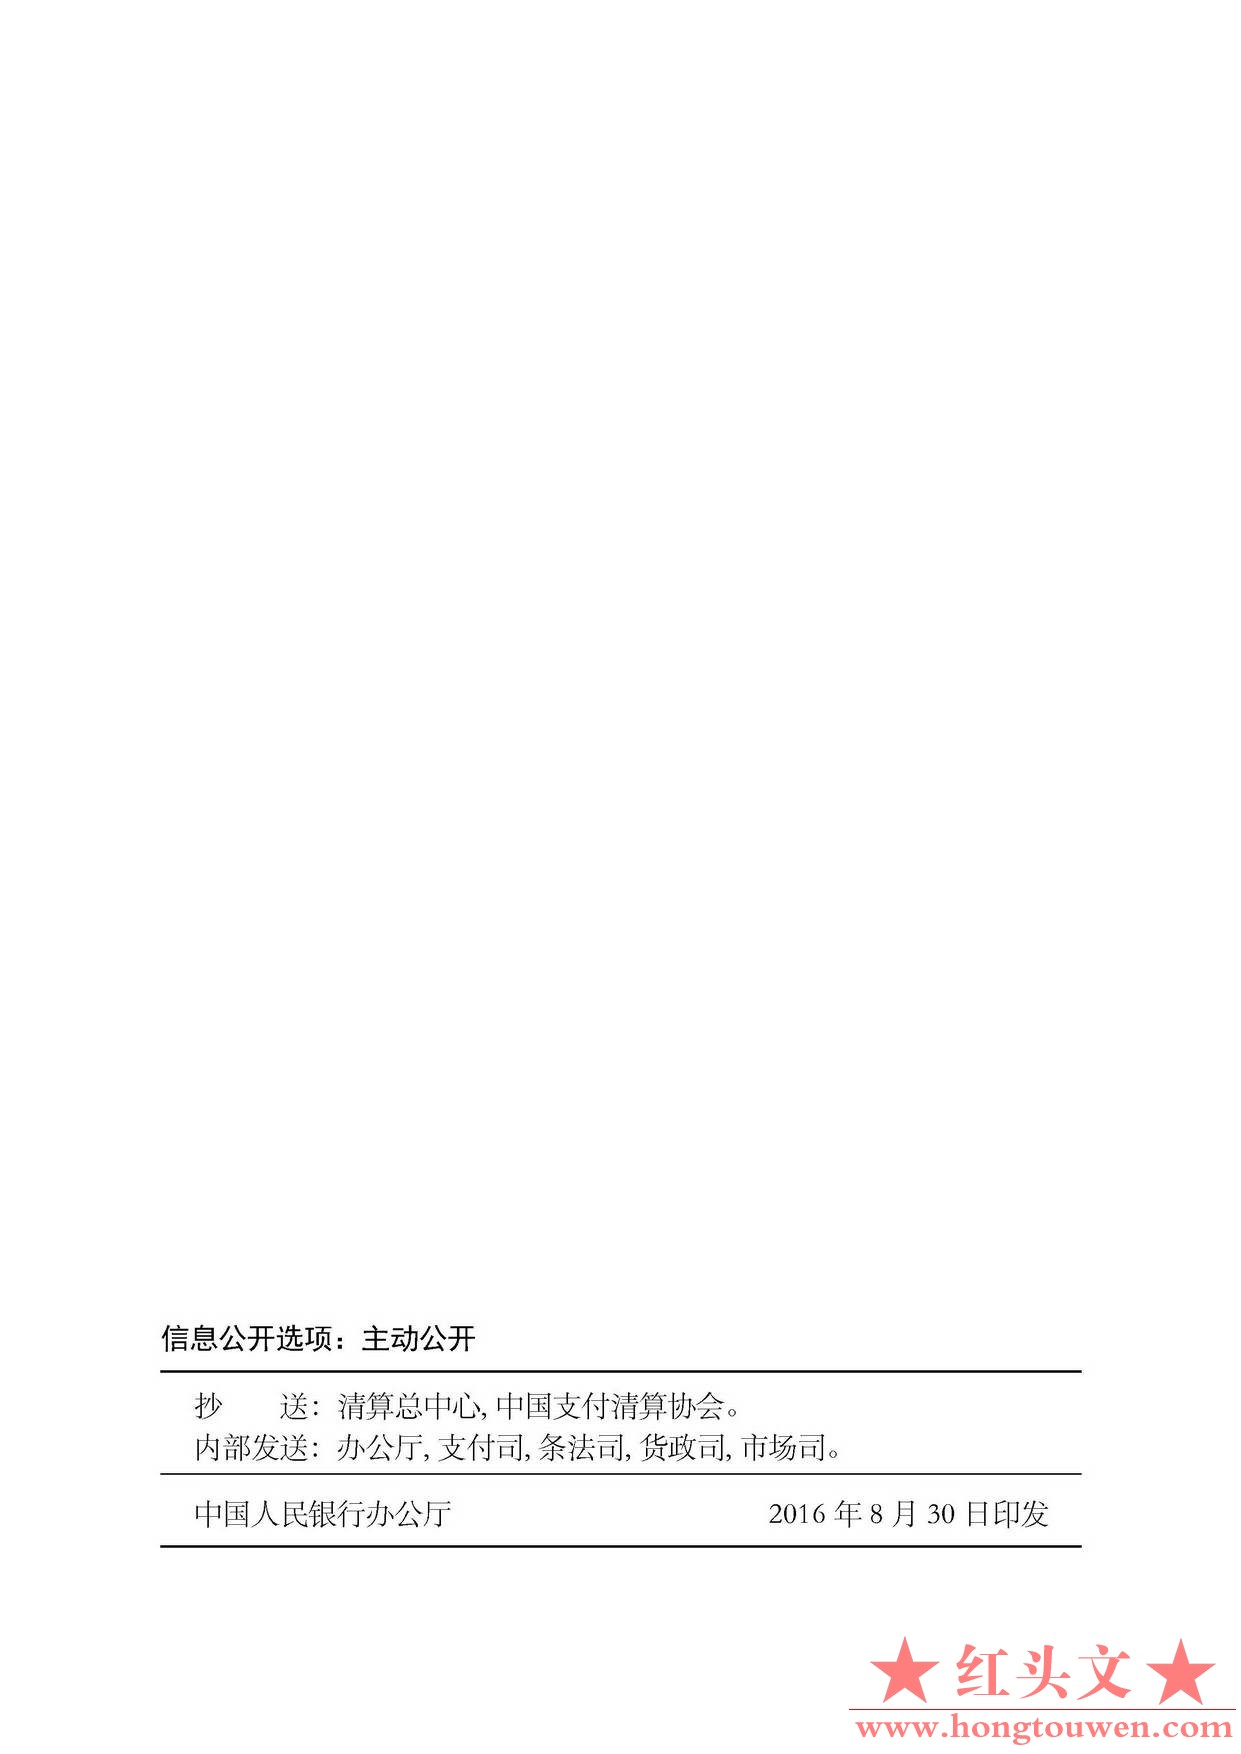 银发[2016]224号-中国人民银行关于规范和促进电子商业汇票业务发展的通知_页面_11.jpg.jpg